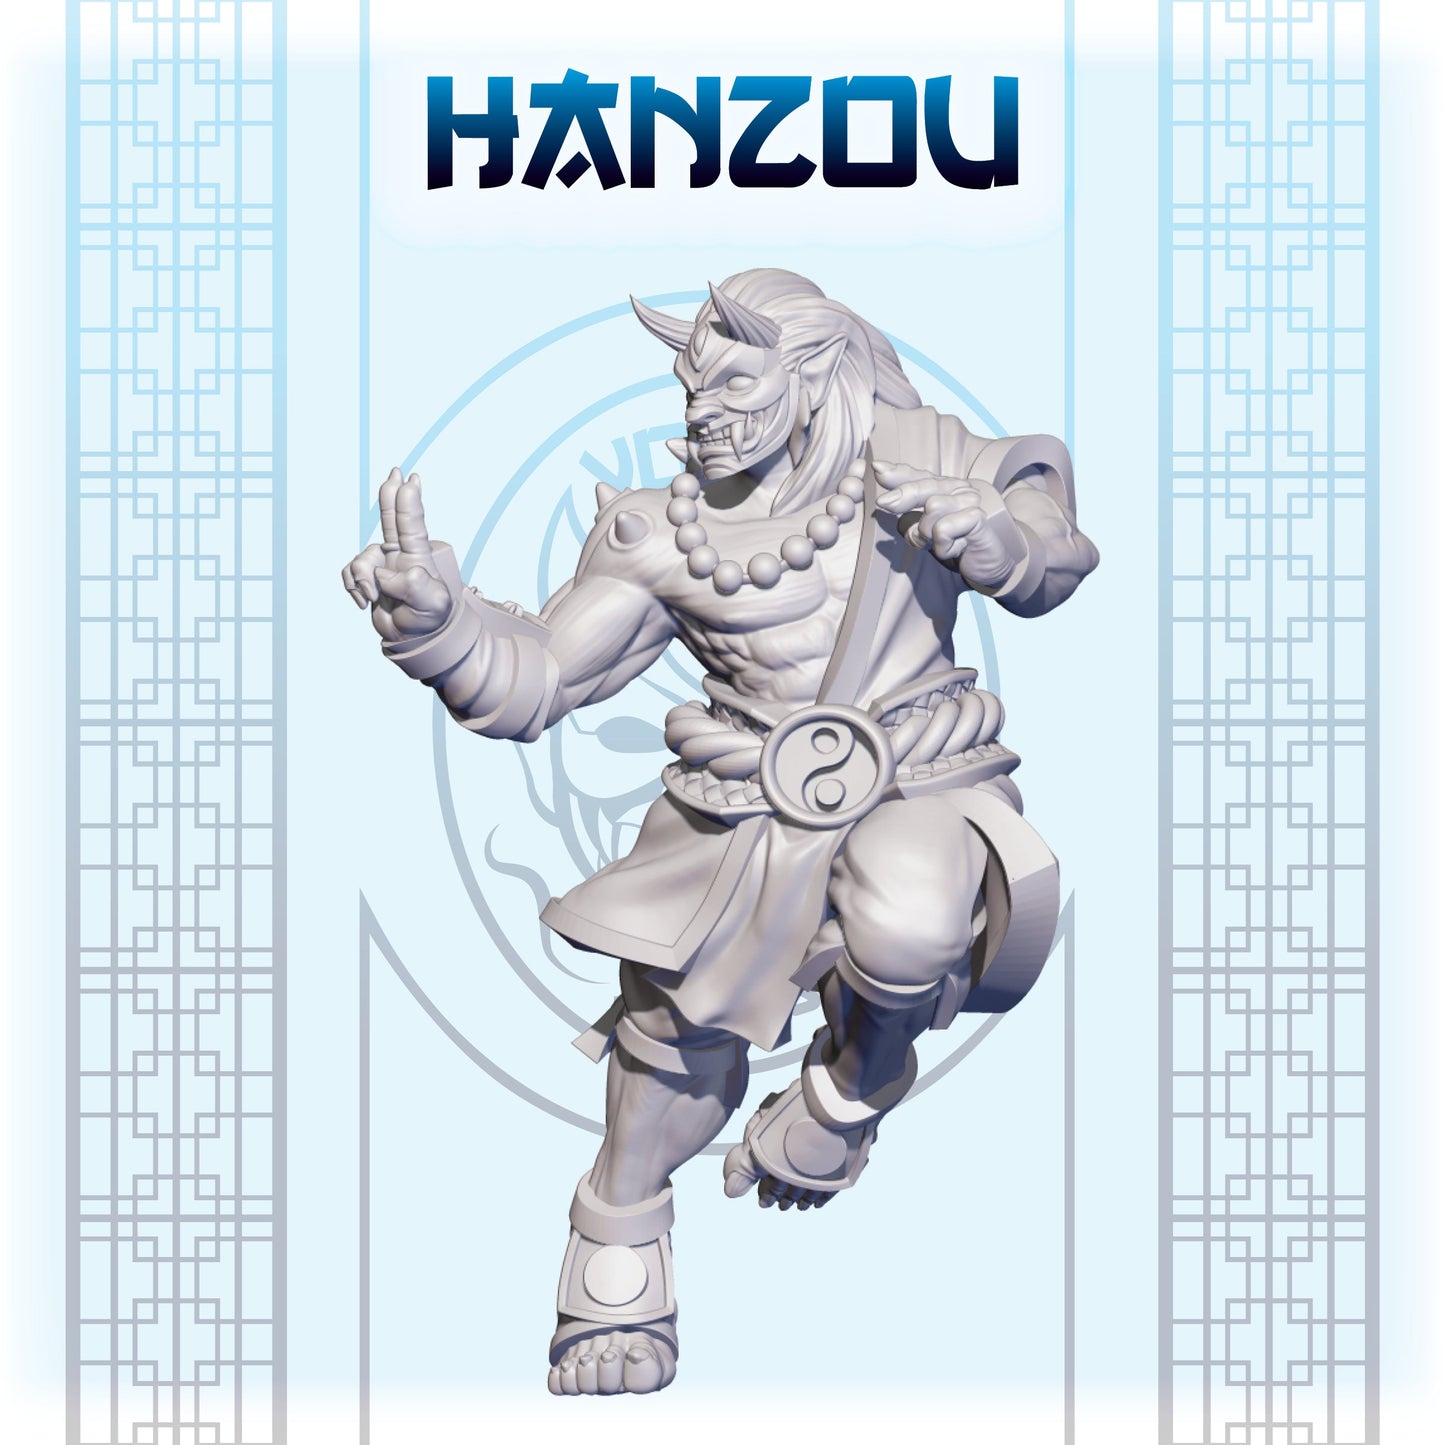 Hanzou